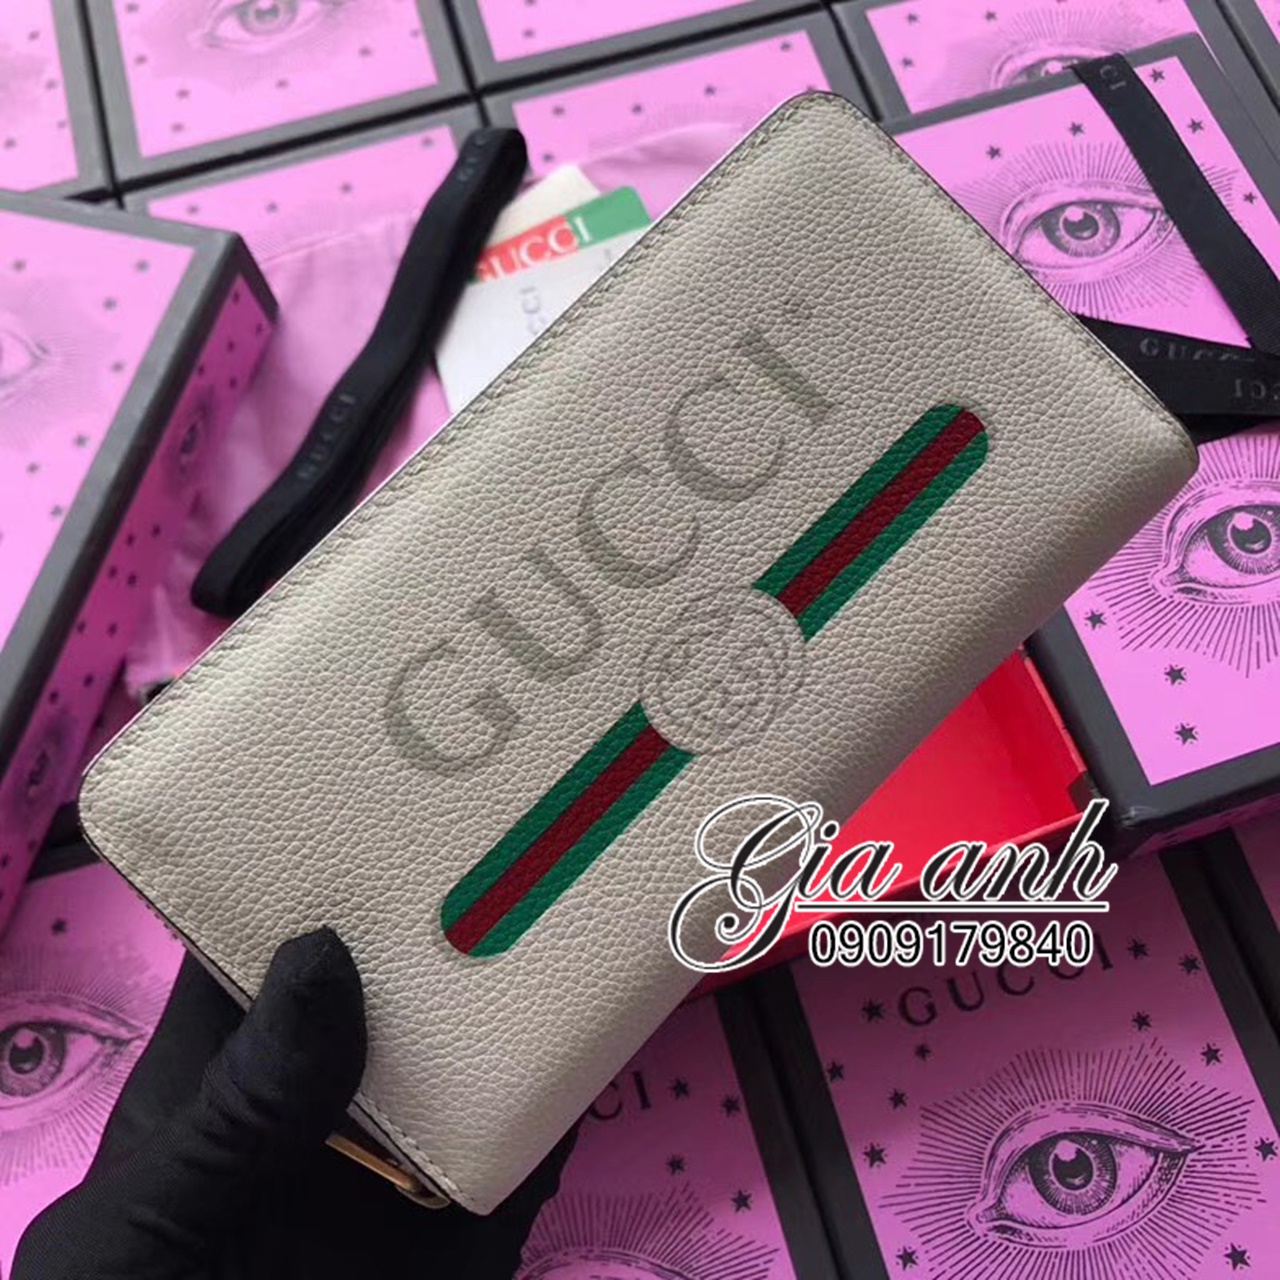 Ví Gucci hàng hiệu cao cấp - GG0006